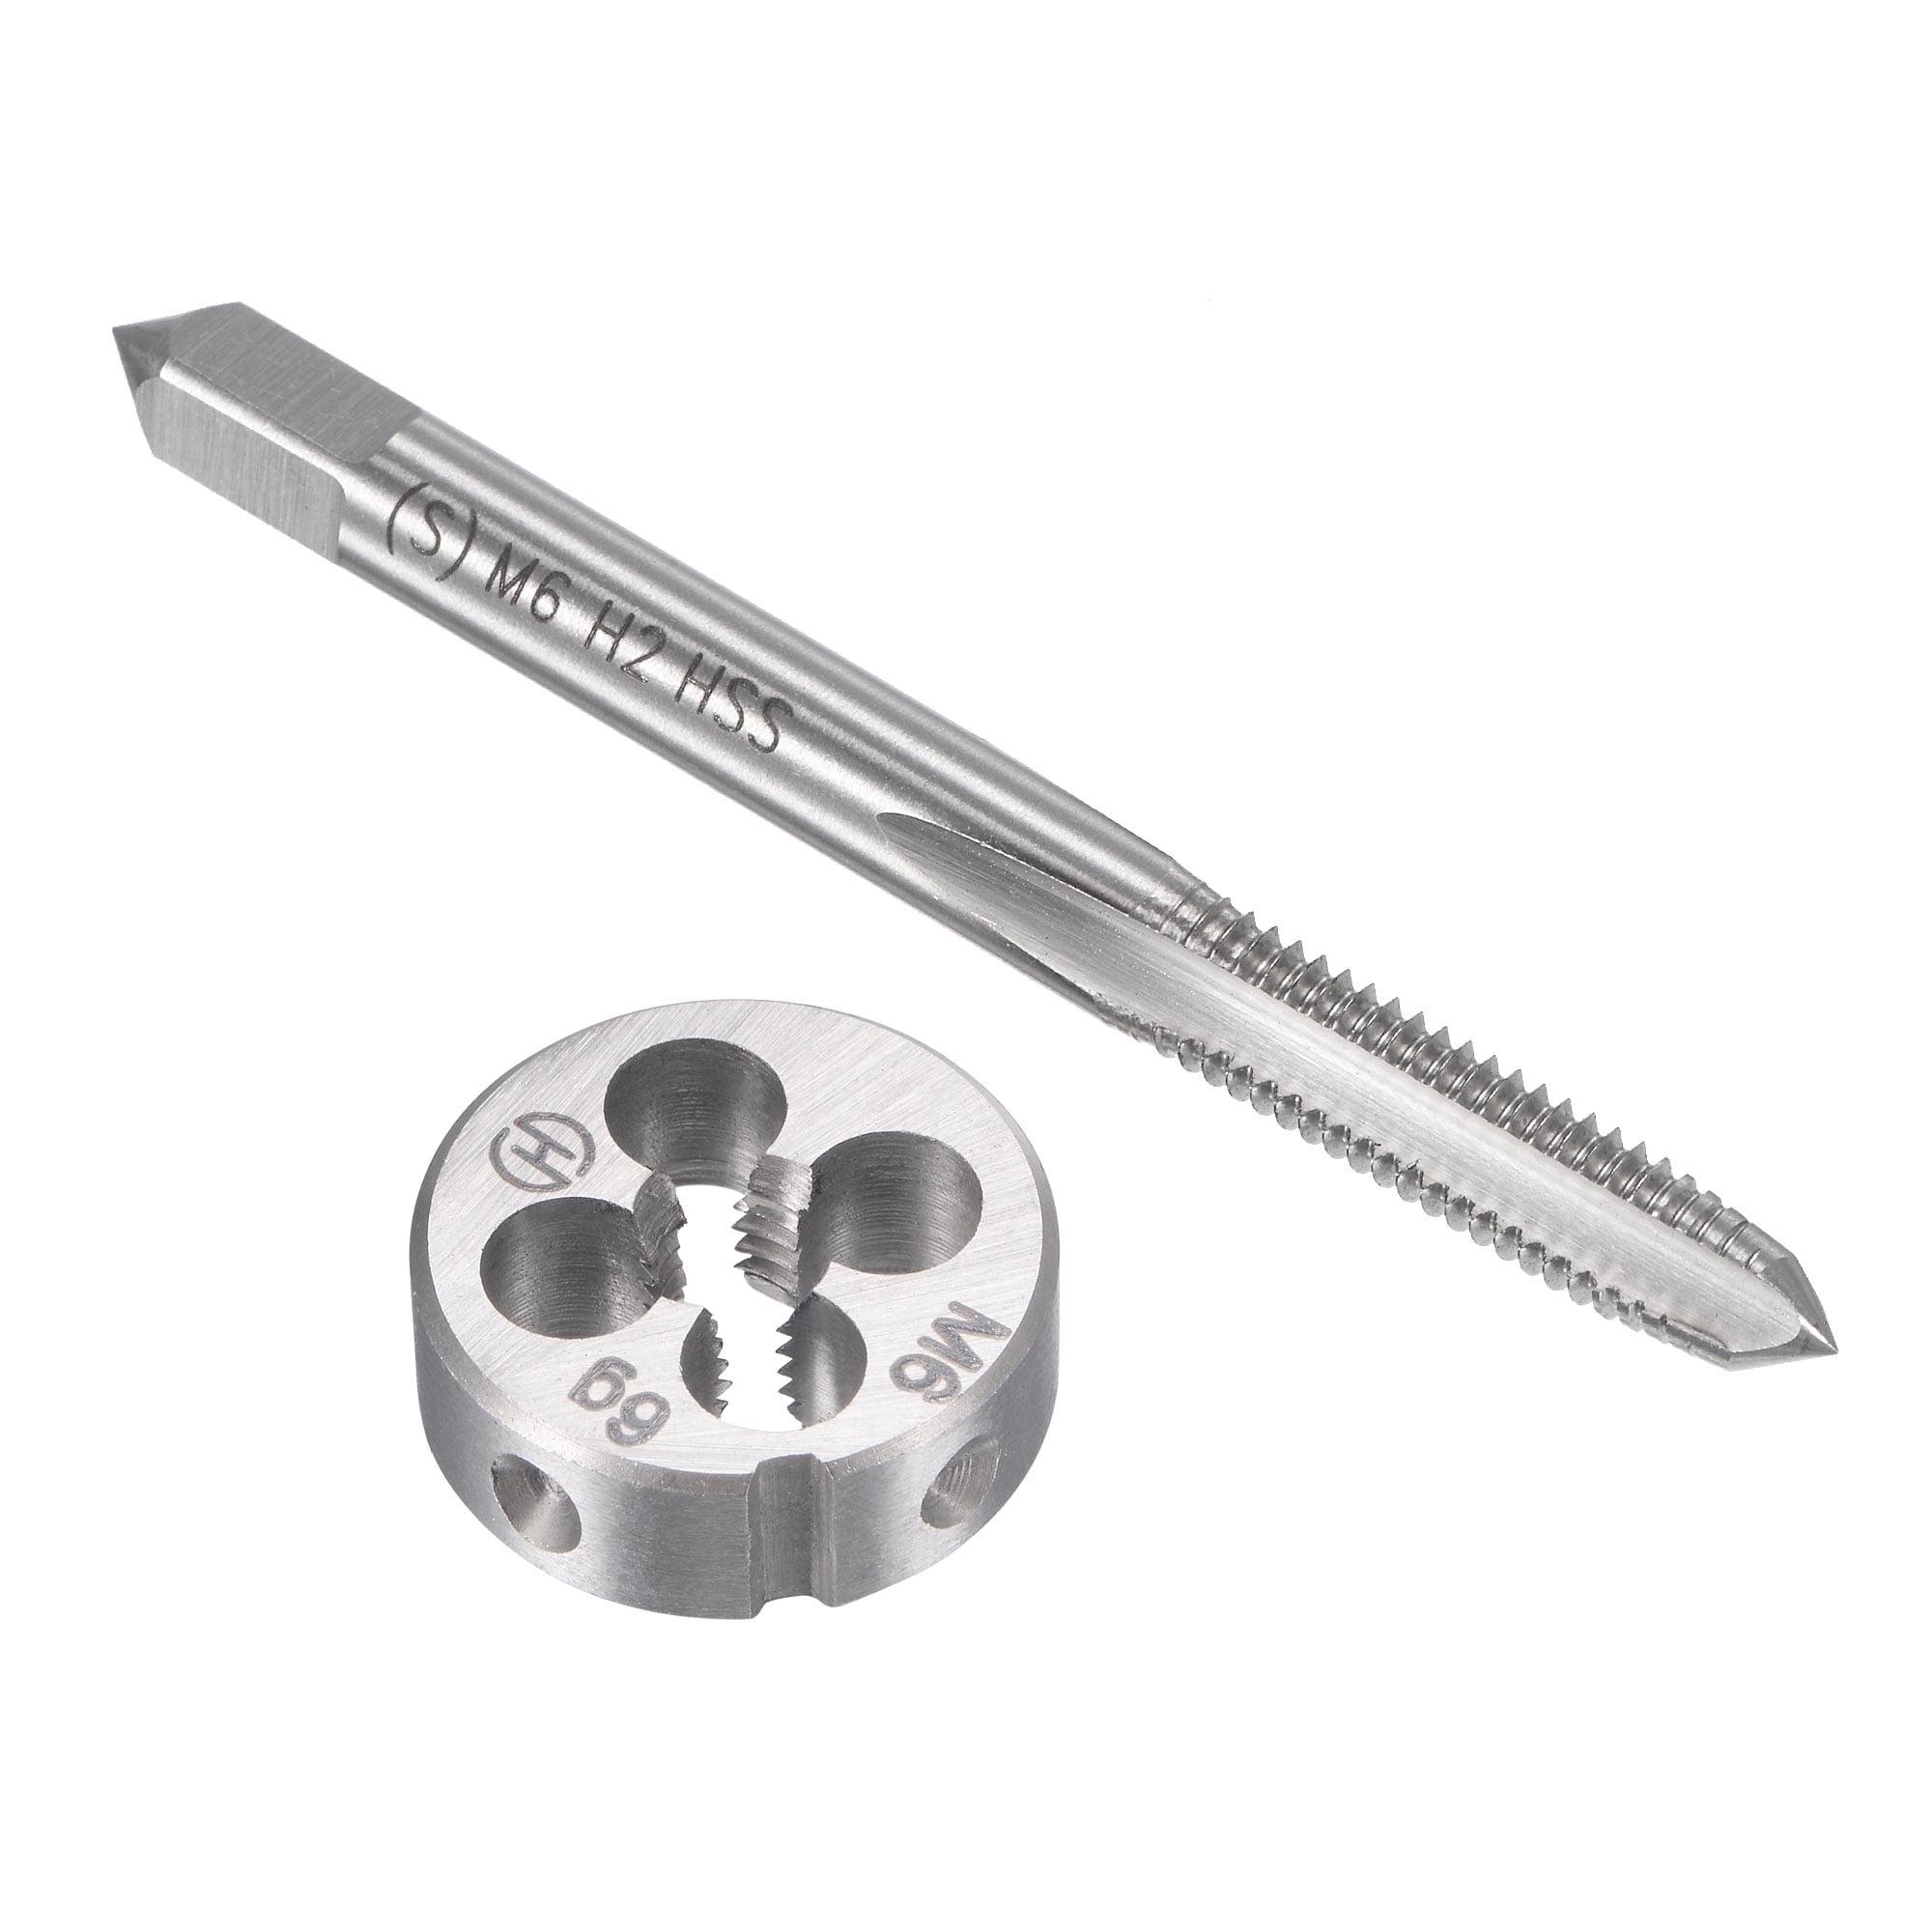 BSF Tap & Die Set Carbon Steel Taper Plug 1" Die Cutter Threading Tool Rethread 